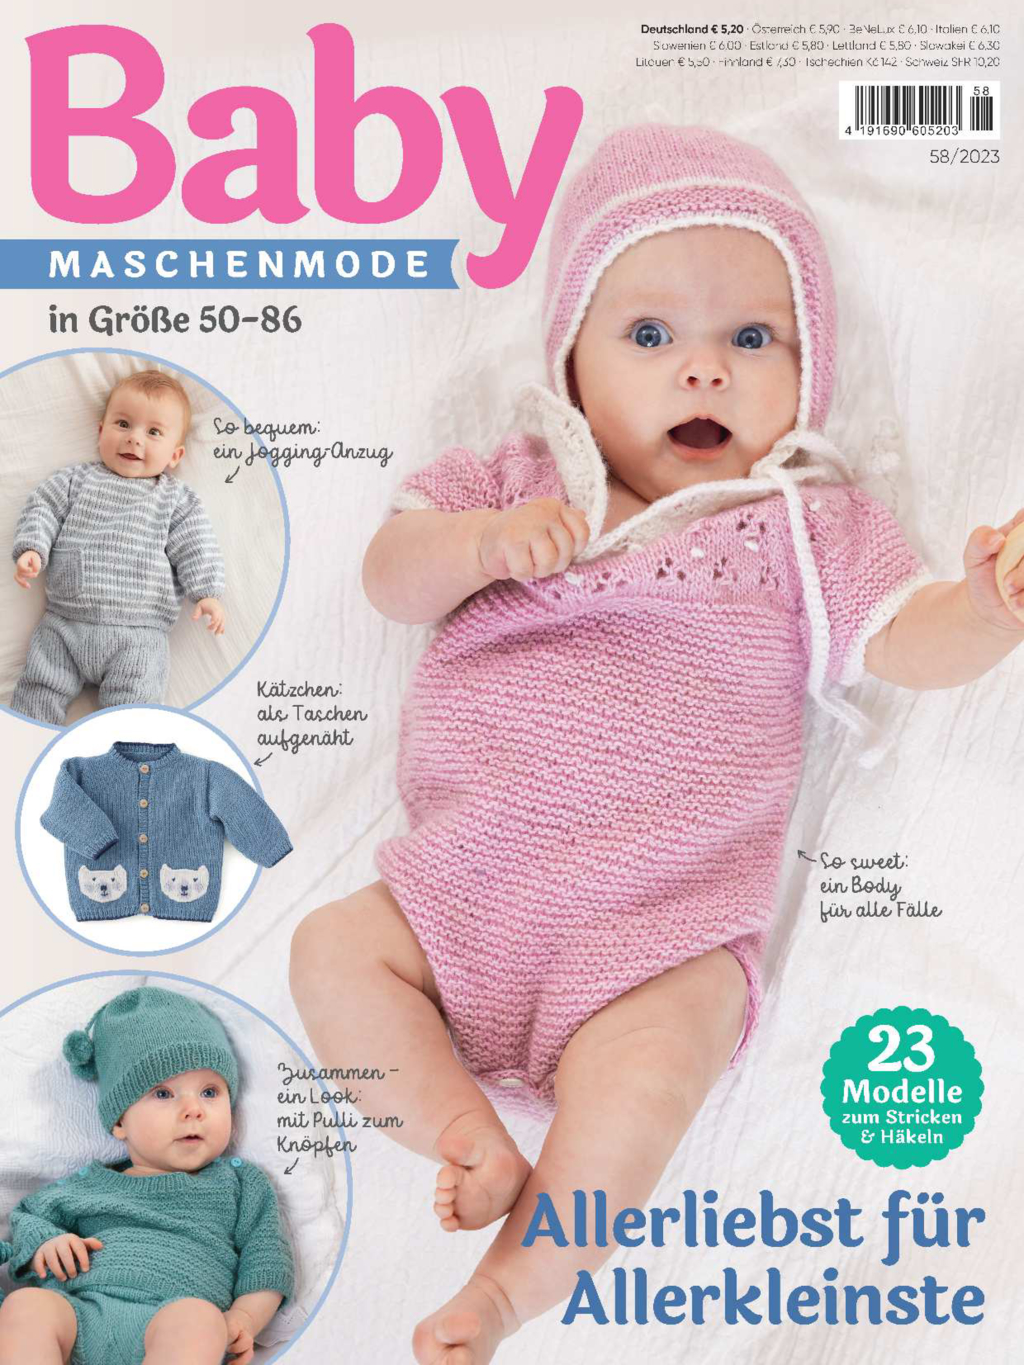 E-Paper: Baby Maschenmode 58/2023 - Allerliebst für Allerkleinste